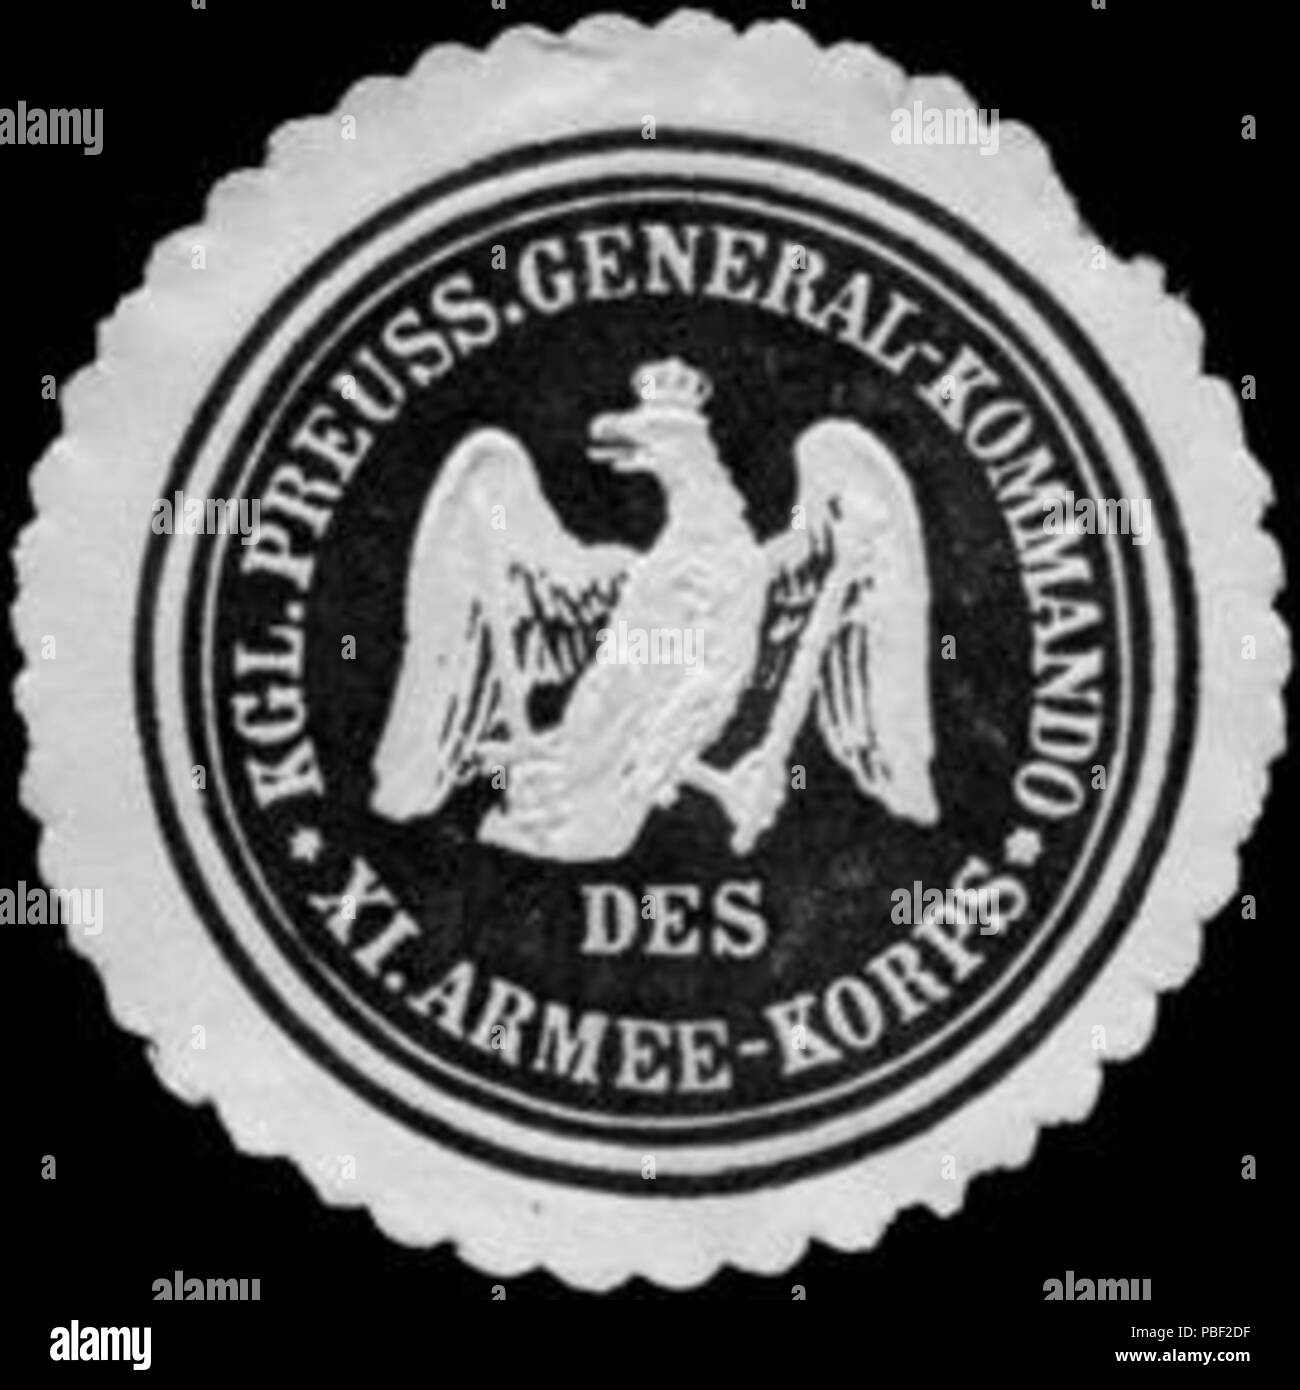 Alte Briefverschlussmarke aus Papier, welche seit ca. 1850 von Behoerden, Anwaelten, Notaren und Firmen zum verschliessen der Post verwendet wurde. 1458 Siegelmarke Königlich Preussisches General - Kommando des XI. Armee - Korps W0224199 Stock Photo